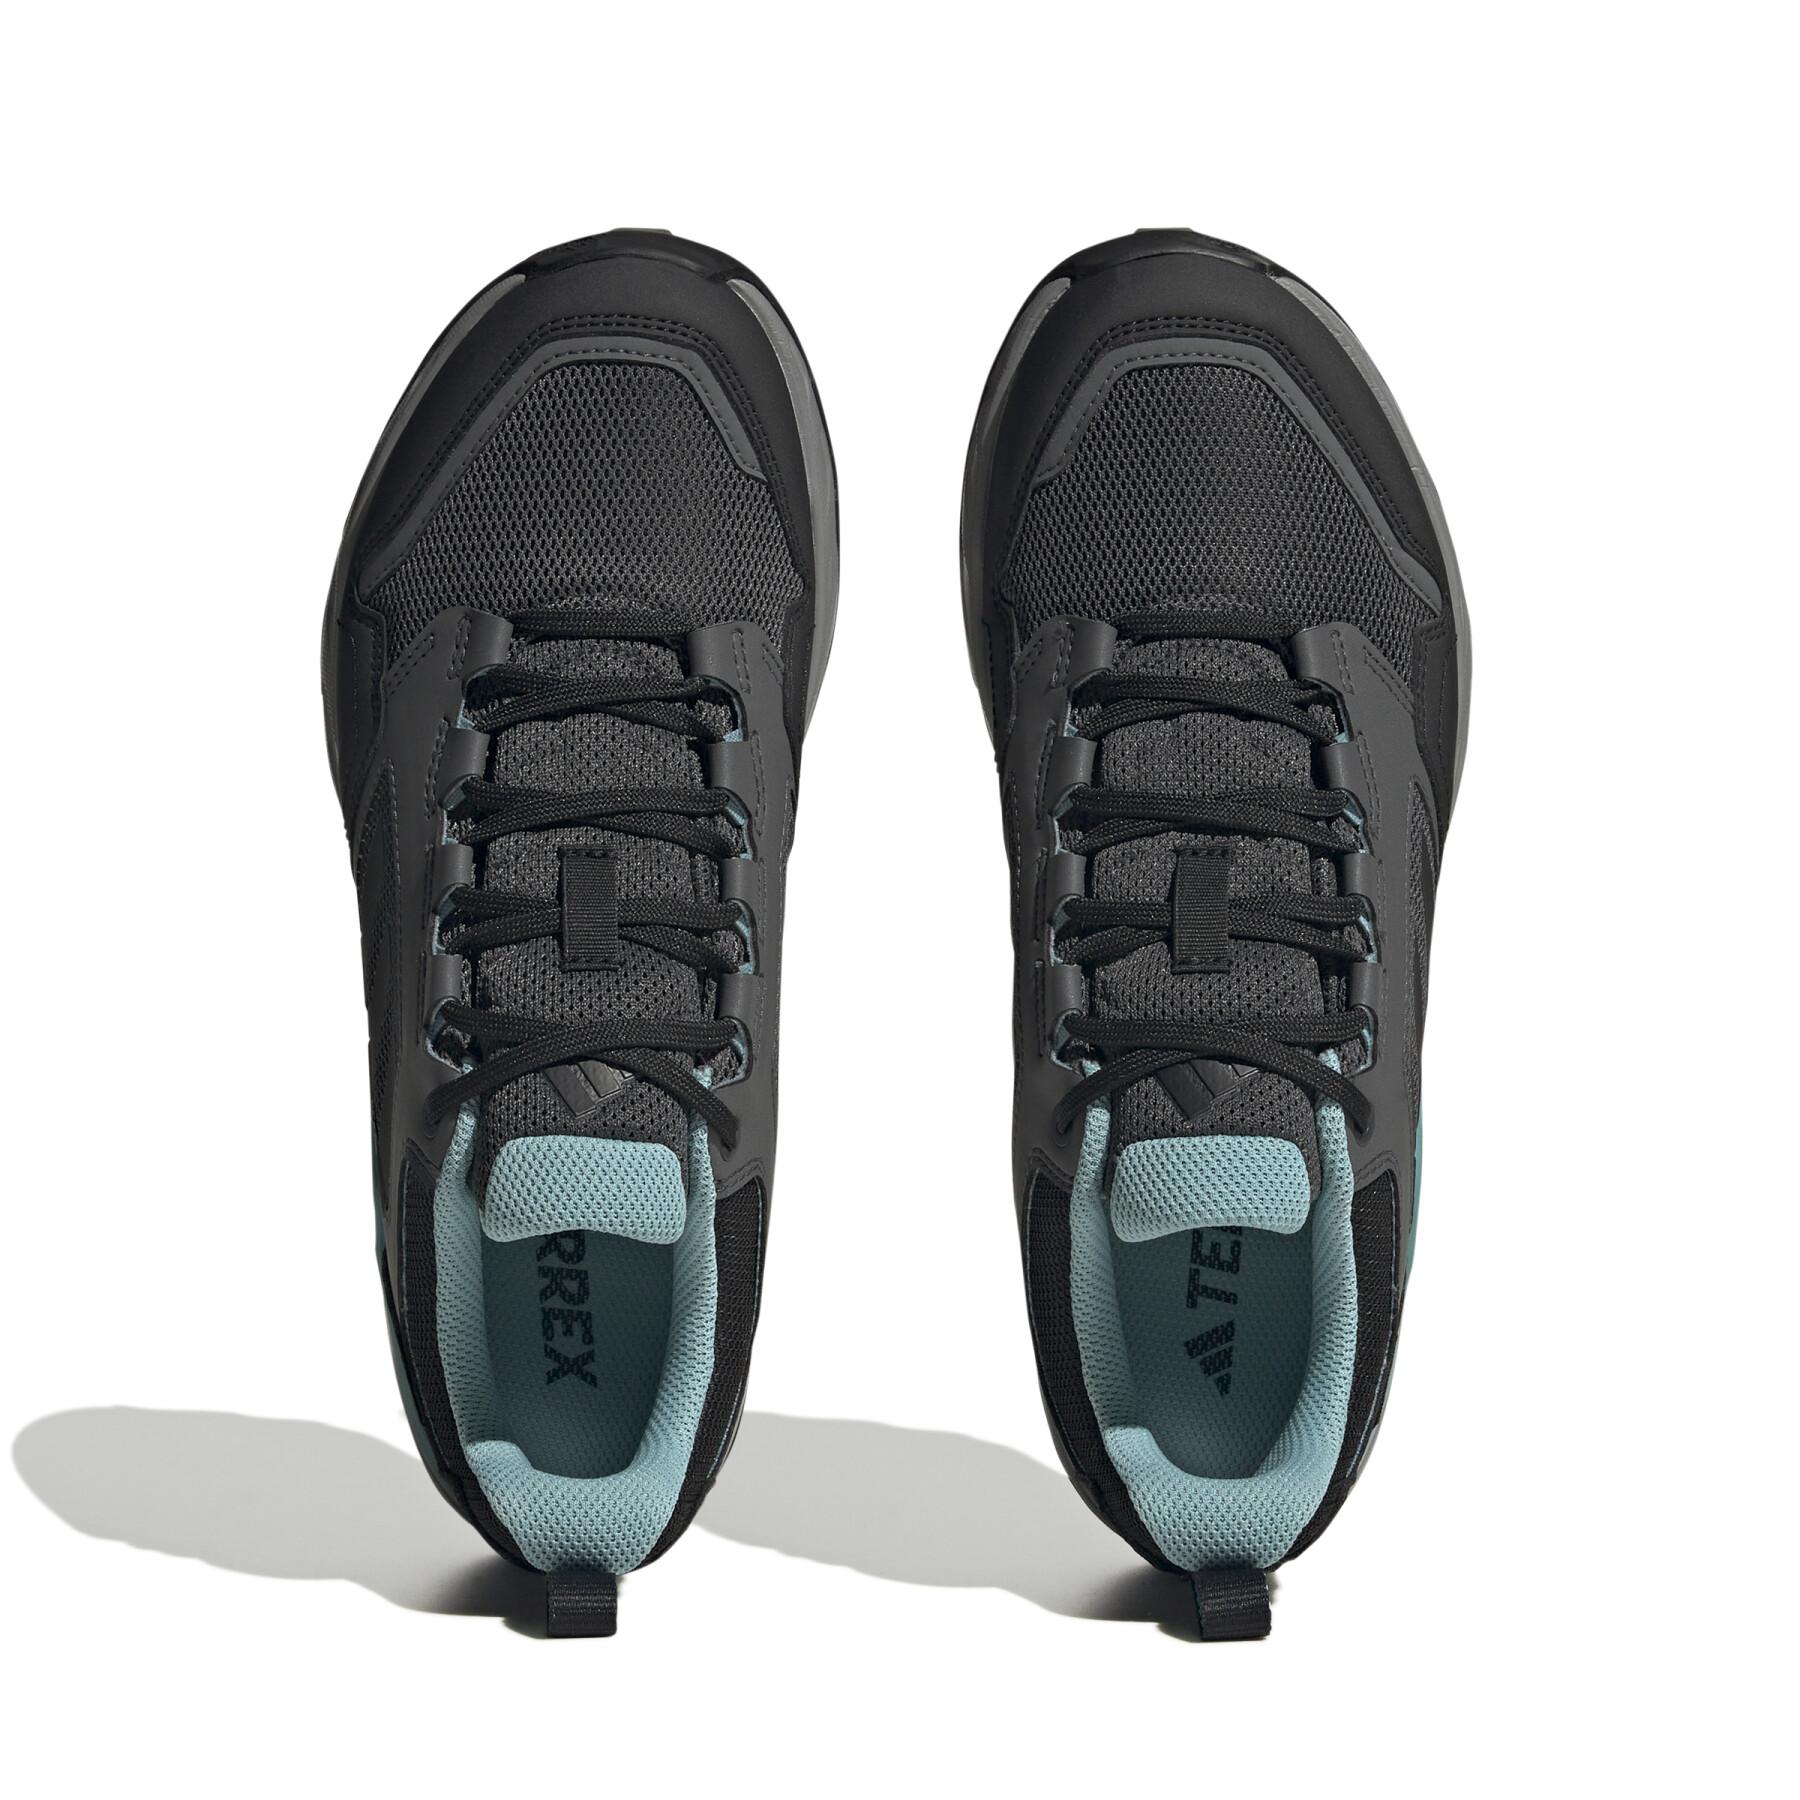 Sapatos de mulher trail femme adidas Tracerocker 2.0 Gore-TEX